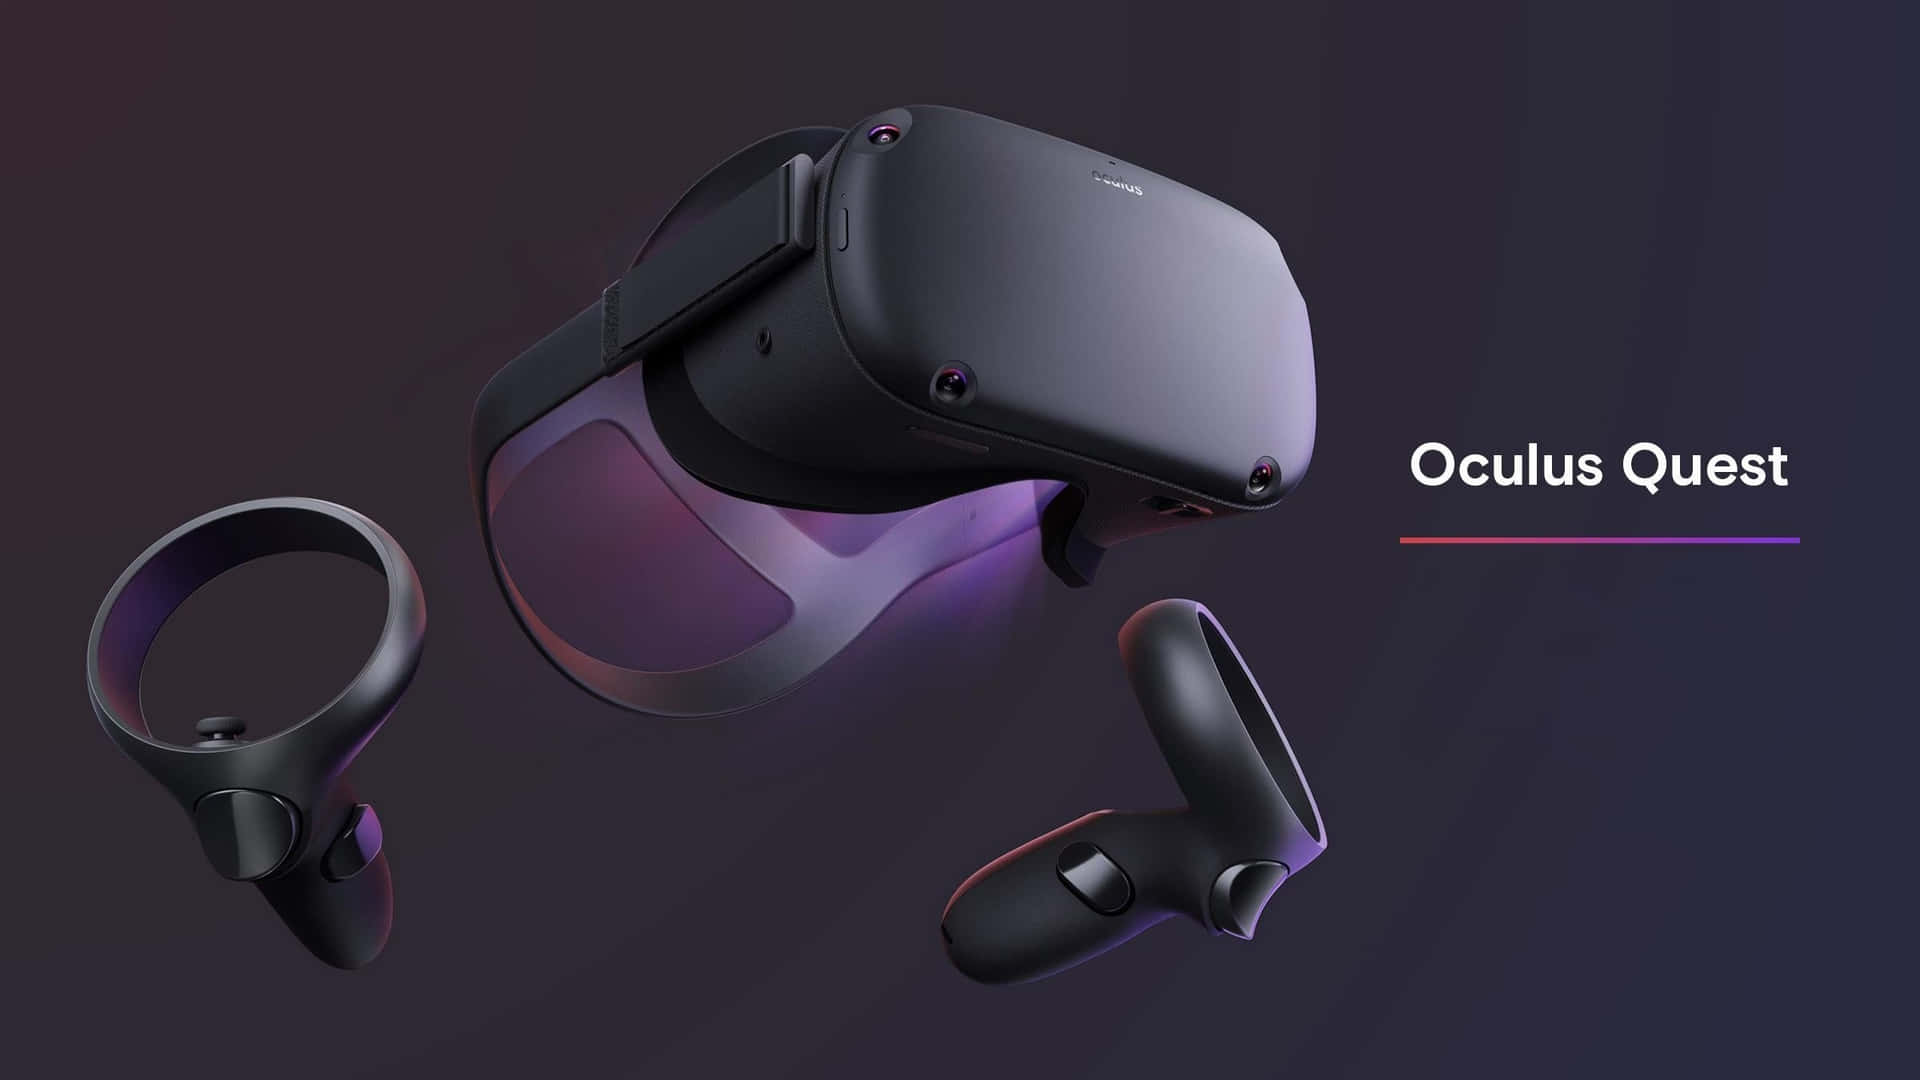 Tauchensie Ein In Die Welt Der Virtual Reality Mit Dem Oculus Quest 2